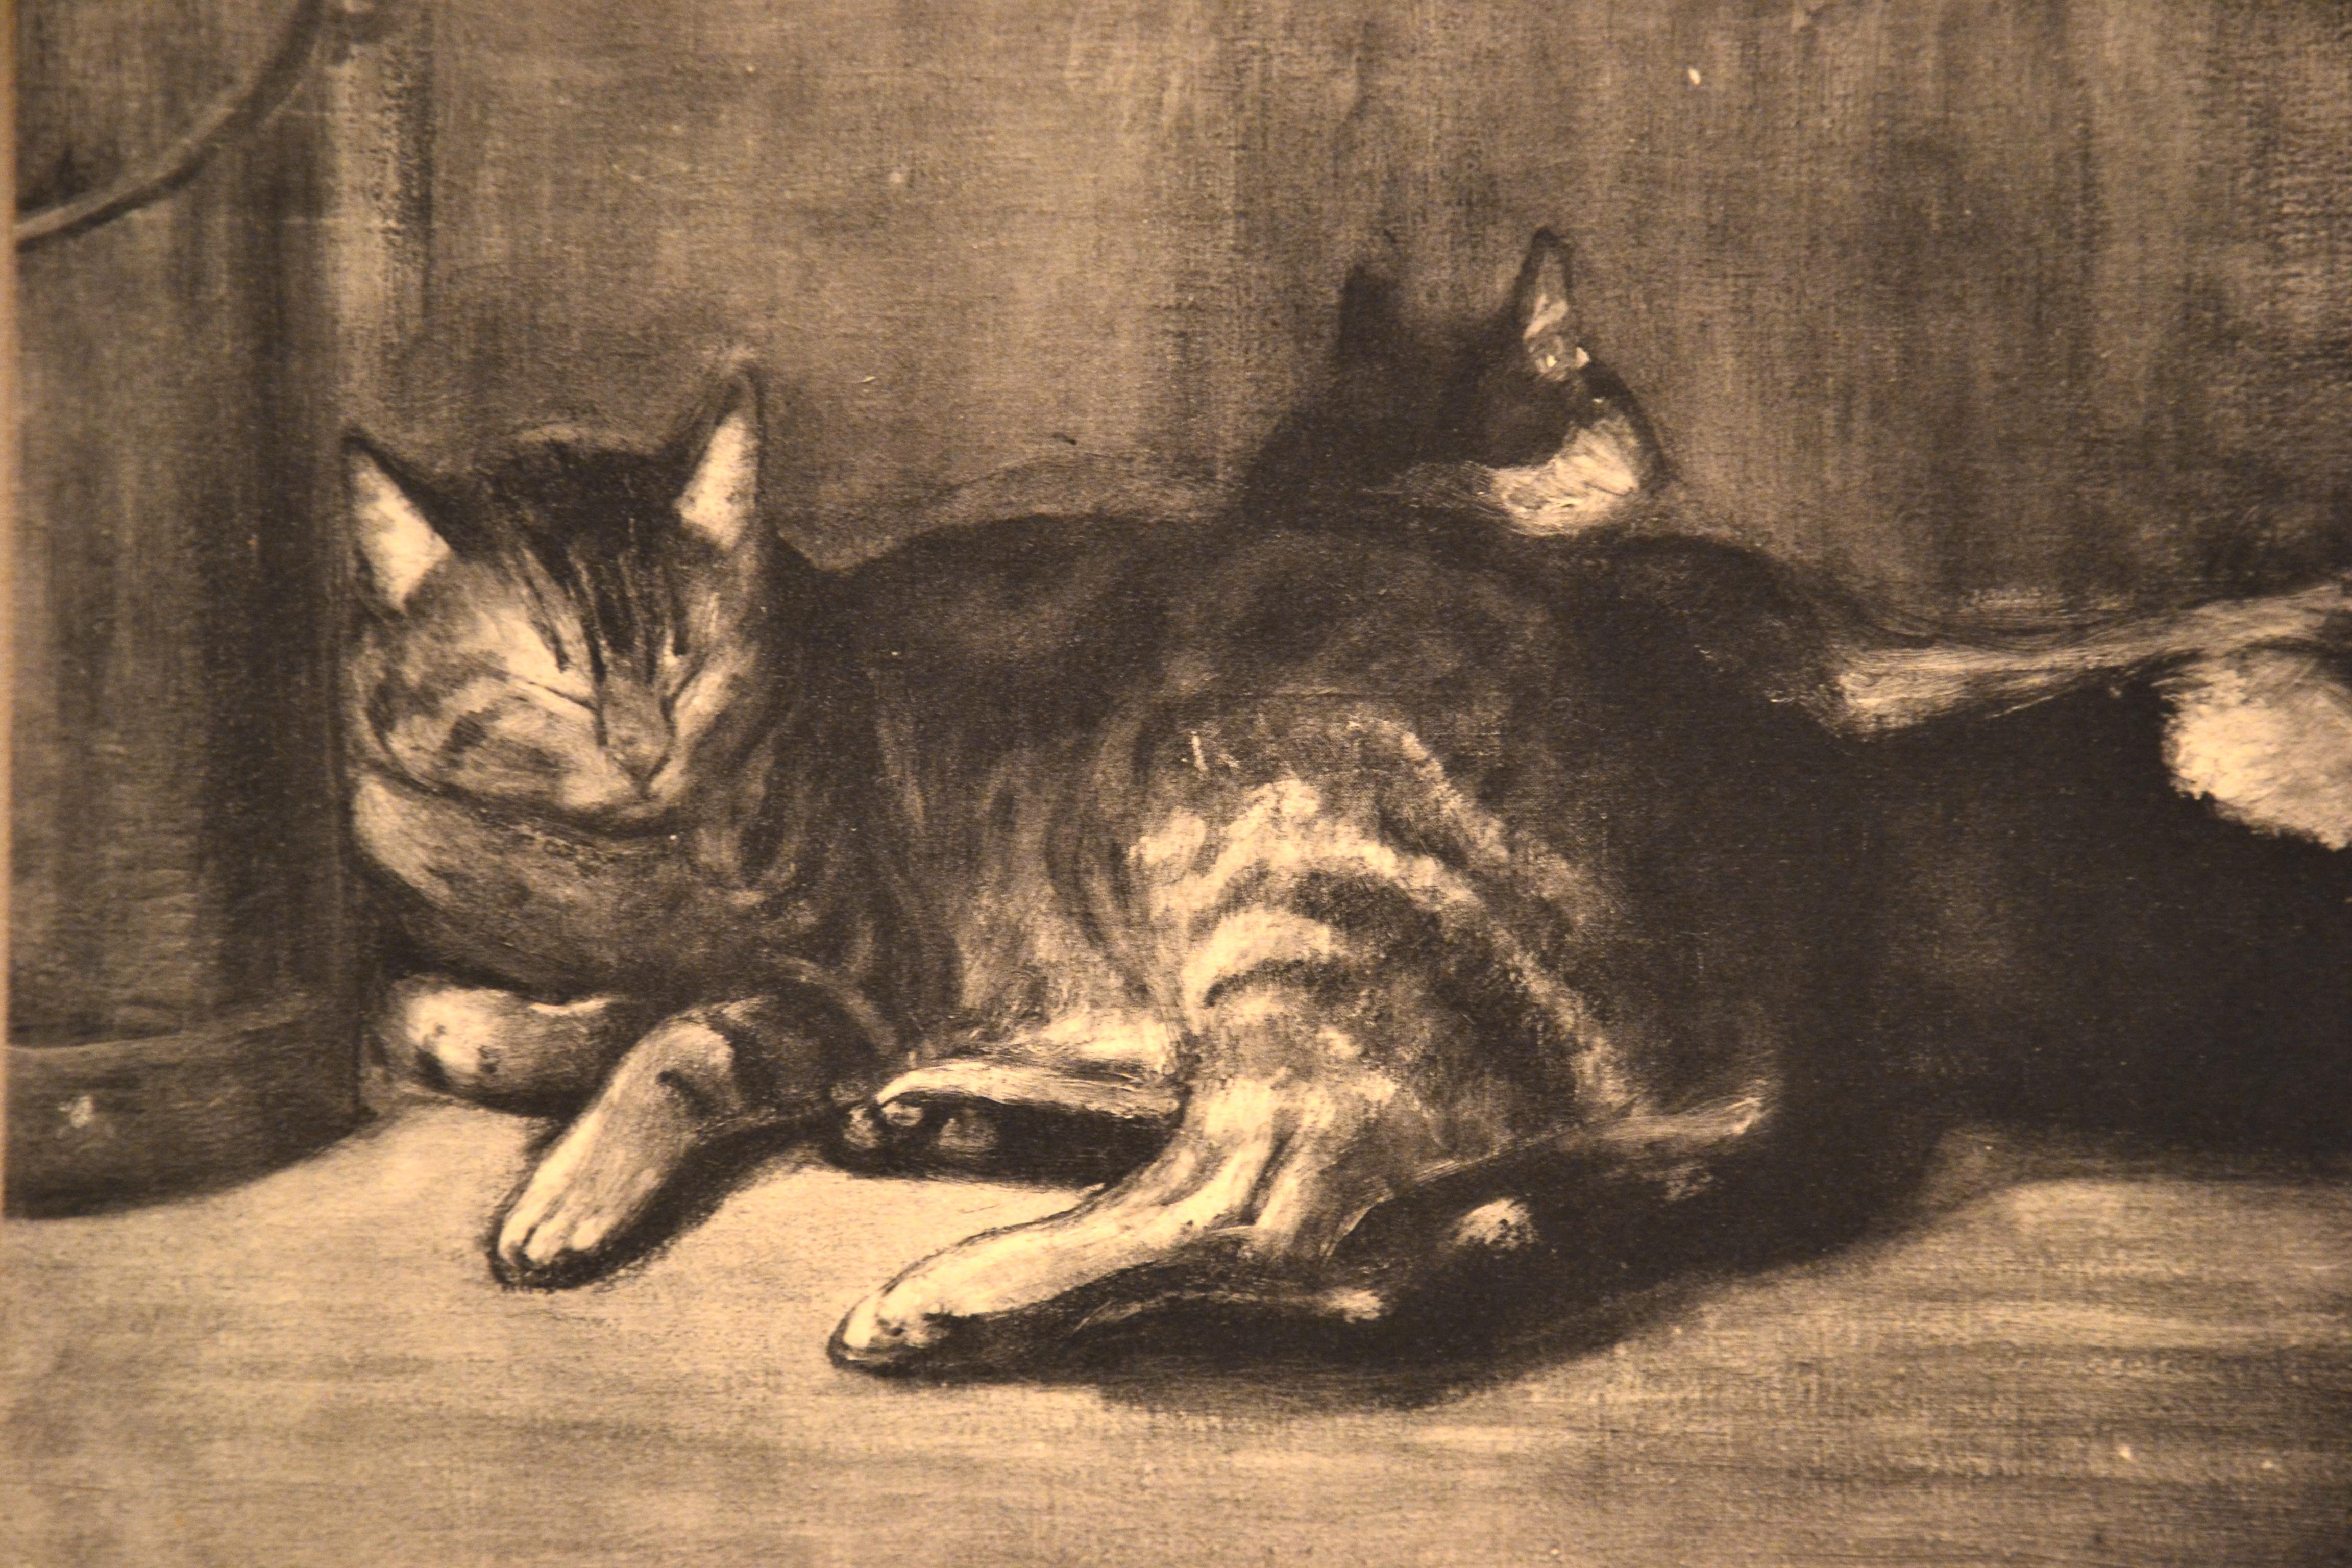 Cats - From Chats et Autres Bêtes ist eine originale Schwarz-Weiß-Lithografie:: die 1933 von Théophile Alexandre Steinlen realisiert wurde. 


Auf der Platte handsigniert. 

Die Lithografie auf Pergament von Arches stammt aus der Mappe mit der